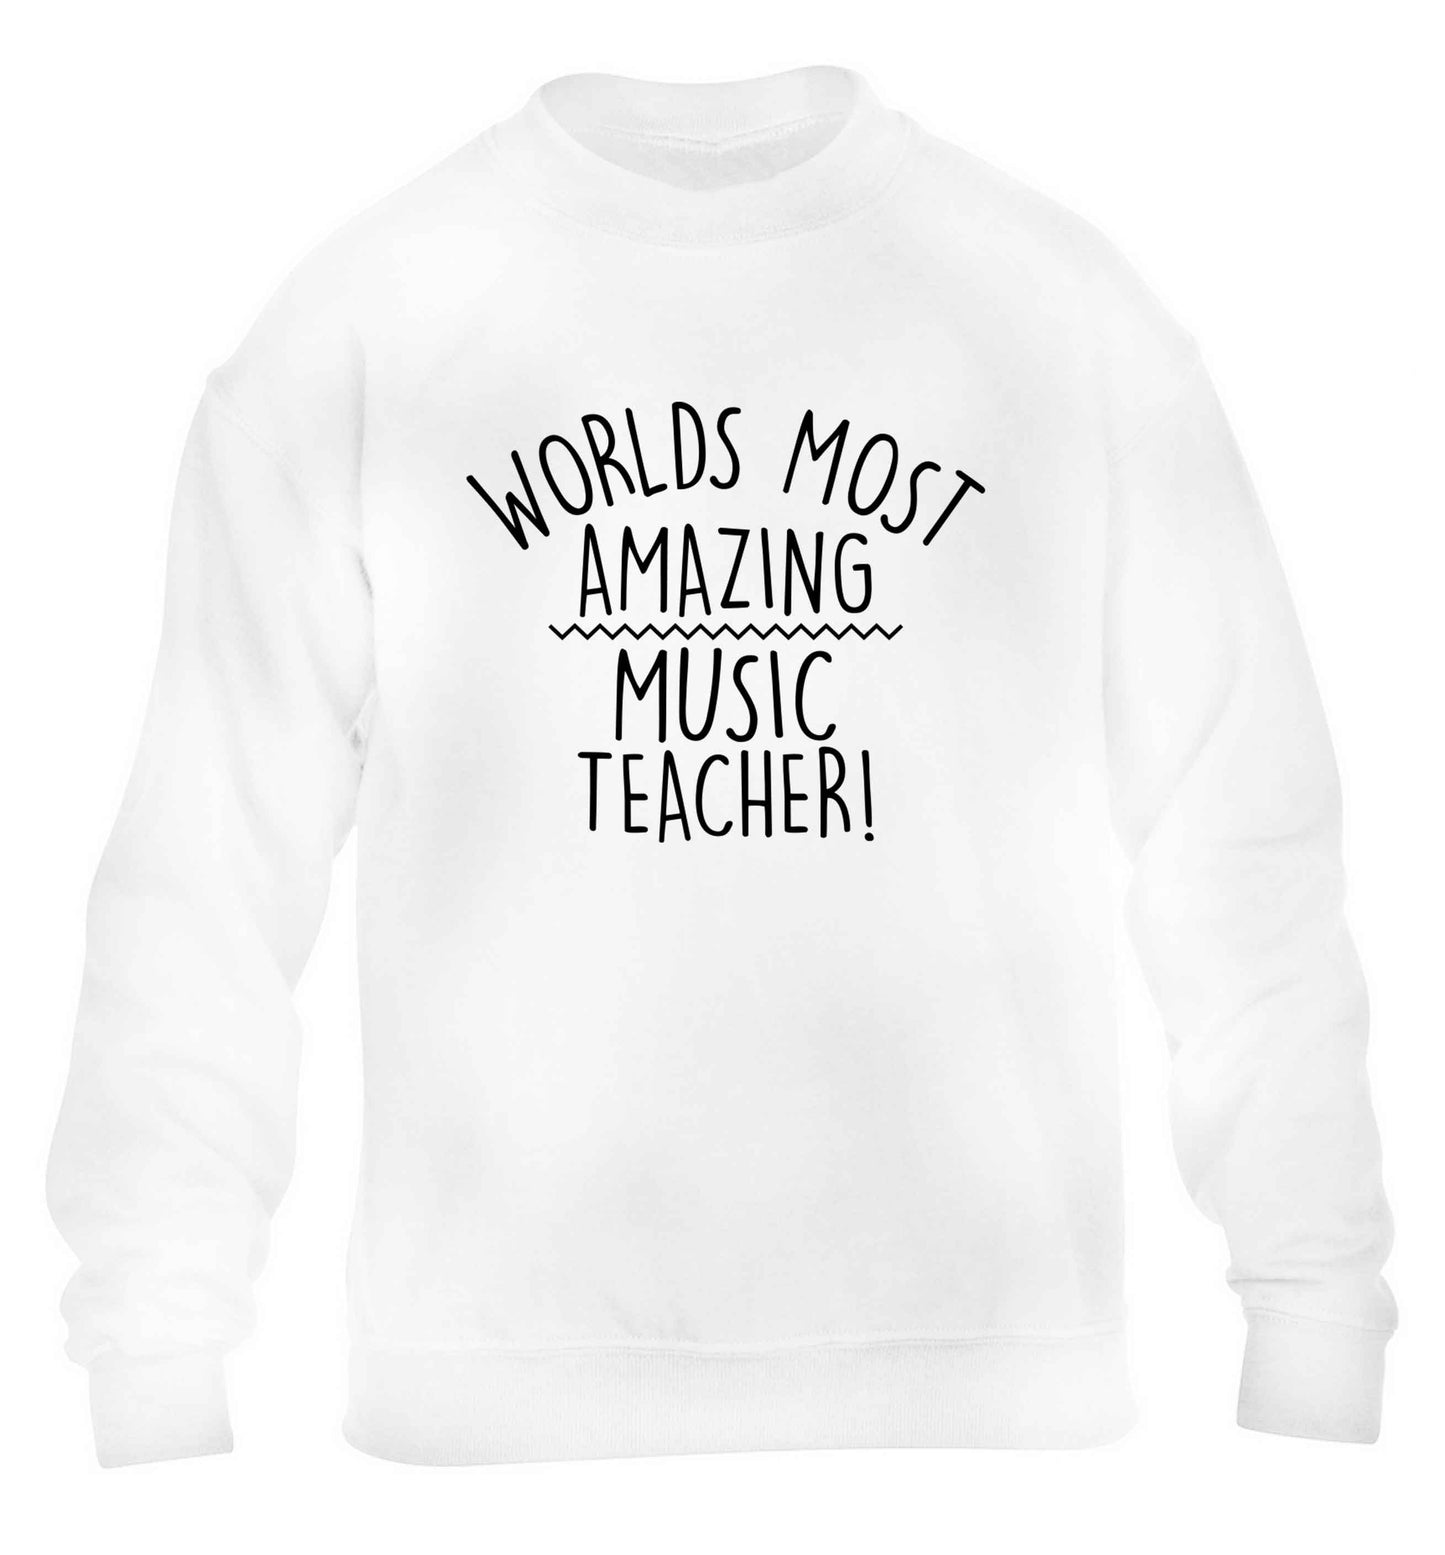 Worlds most amazing music teacher children's white sweater 12-13 Years